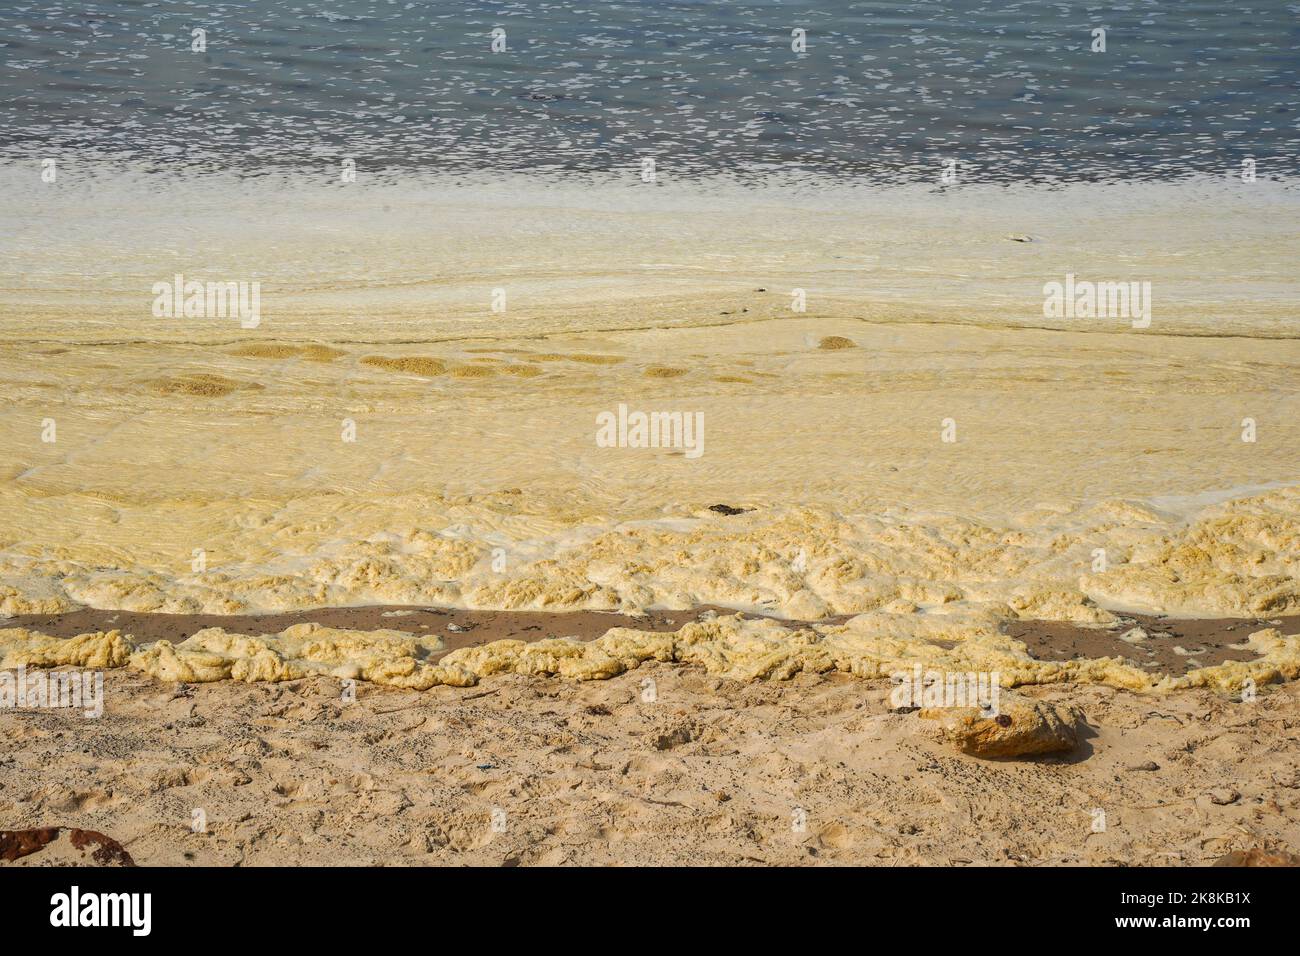 Schiuma marina lavata o soffiata su una spiaggia a causa di fuoriuscite di petrolio, inquinamento a Tarifa Beach, Andalusia, Spagna. Foto Stock